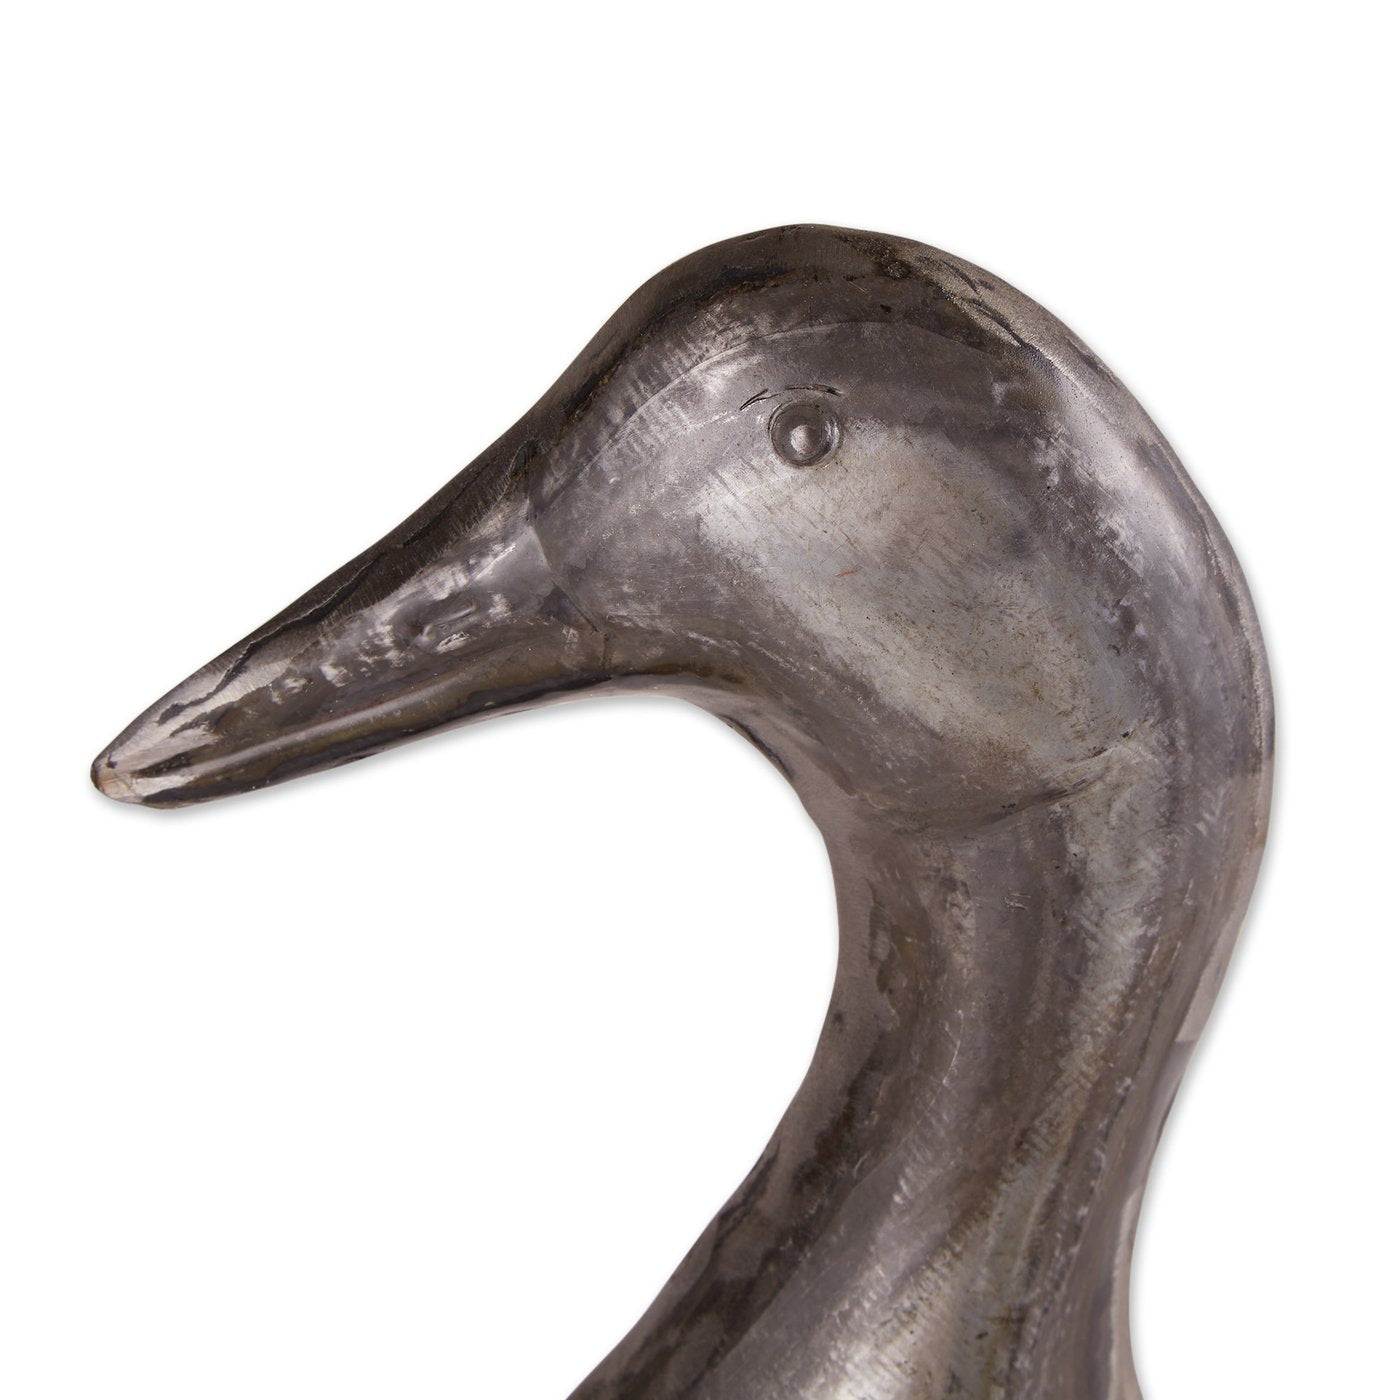 Galvanized Duck Sculpture